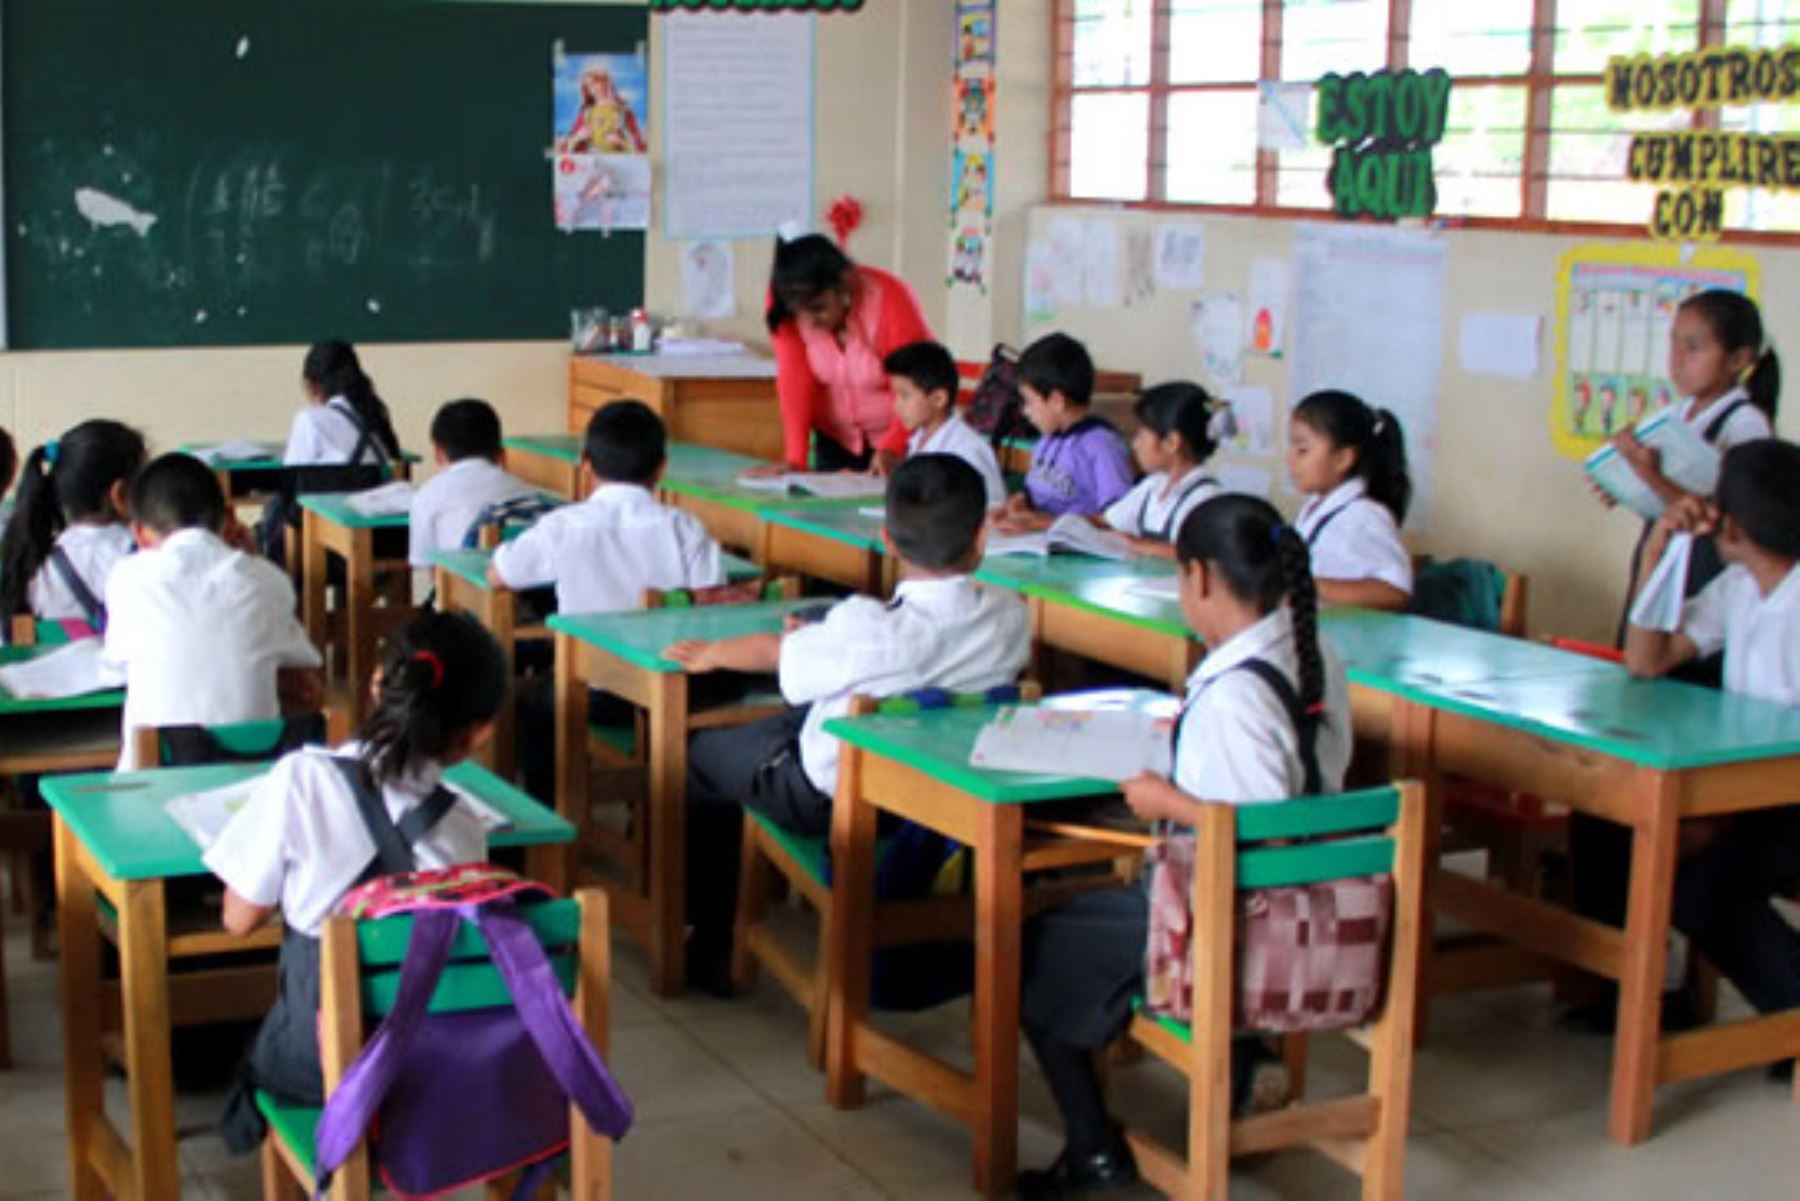 Padres conocerán sobre el enfoque de género incluido en el curriculo nacional que regirá la educación en las aulas. Foto: Andina/Difusión